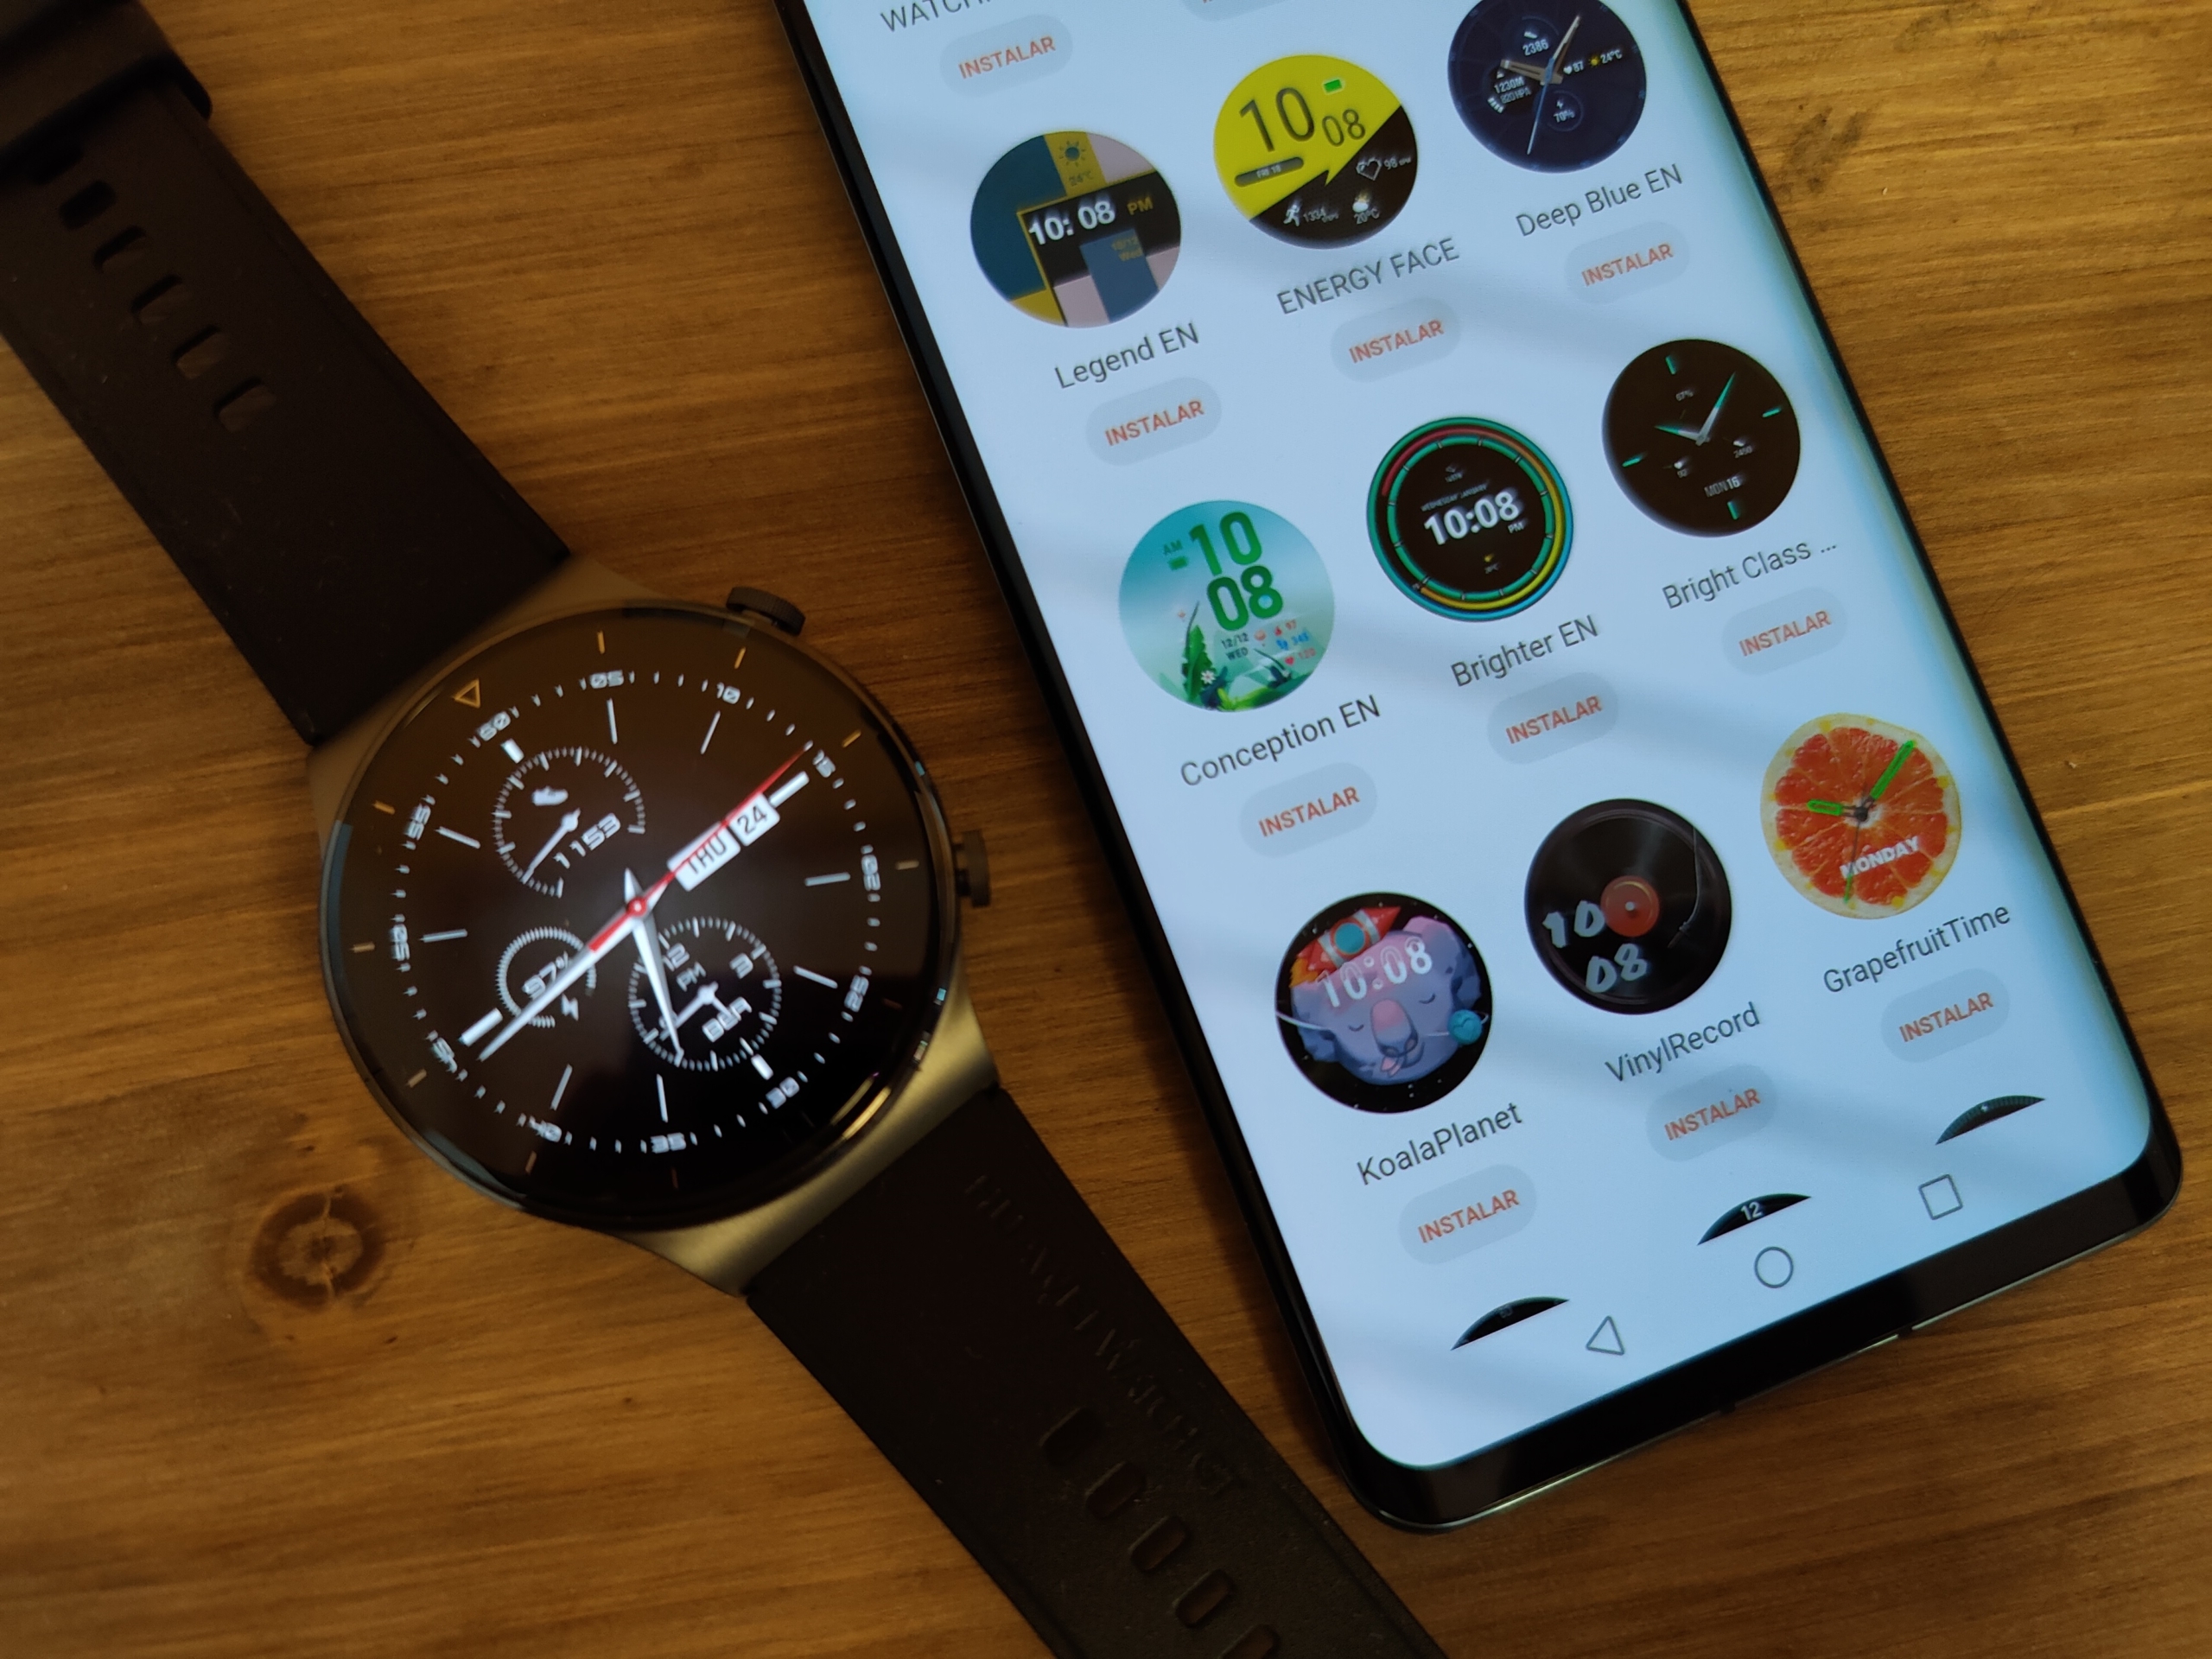 ANÁLISIS  Evaluamos el nuevo smartwatch de Huawei Watch GT2